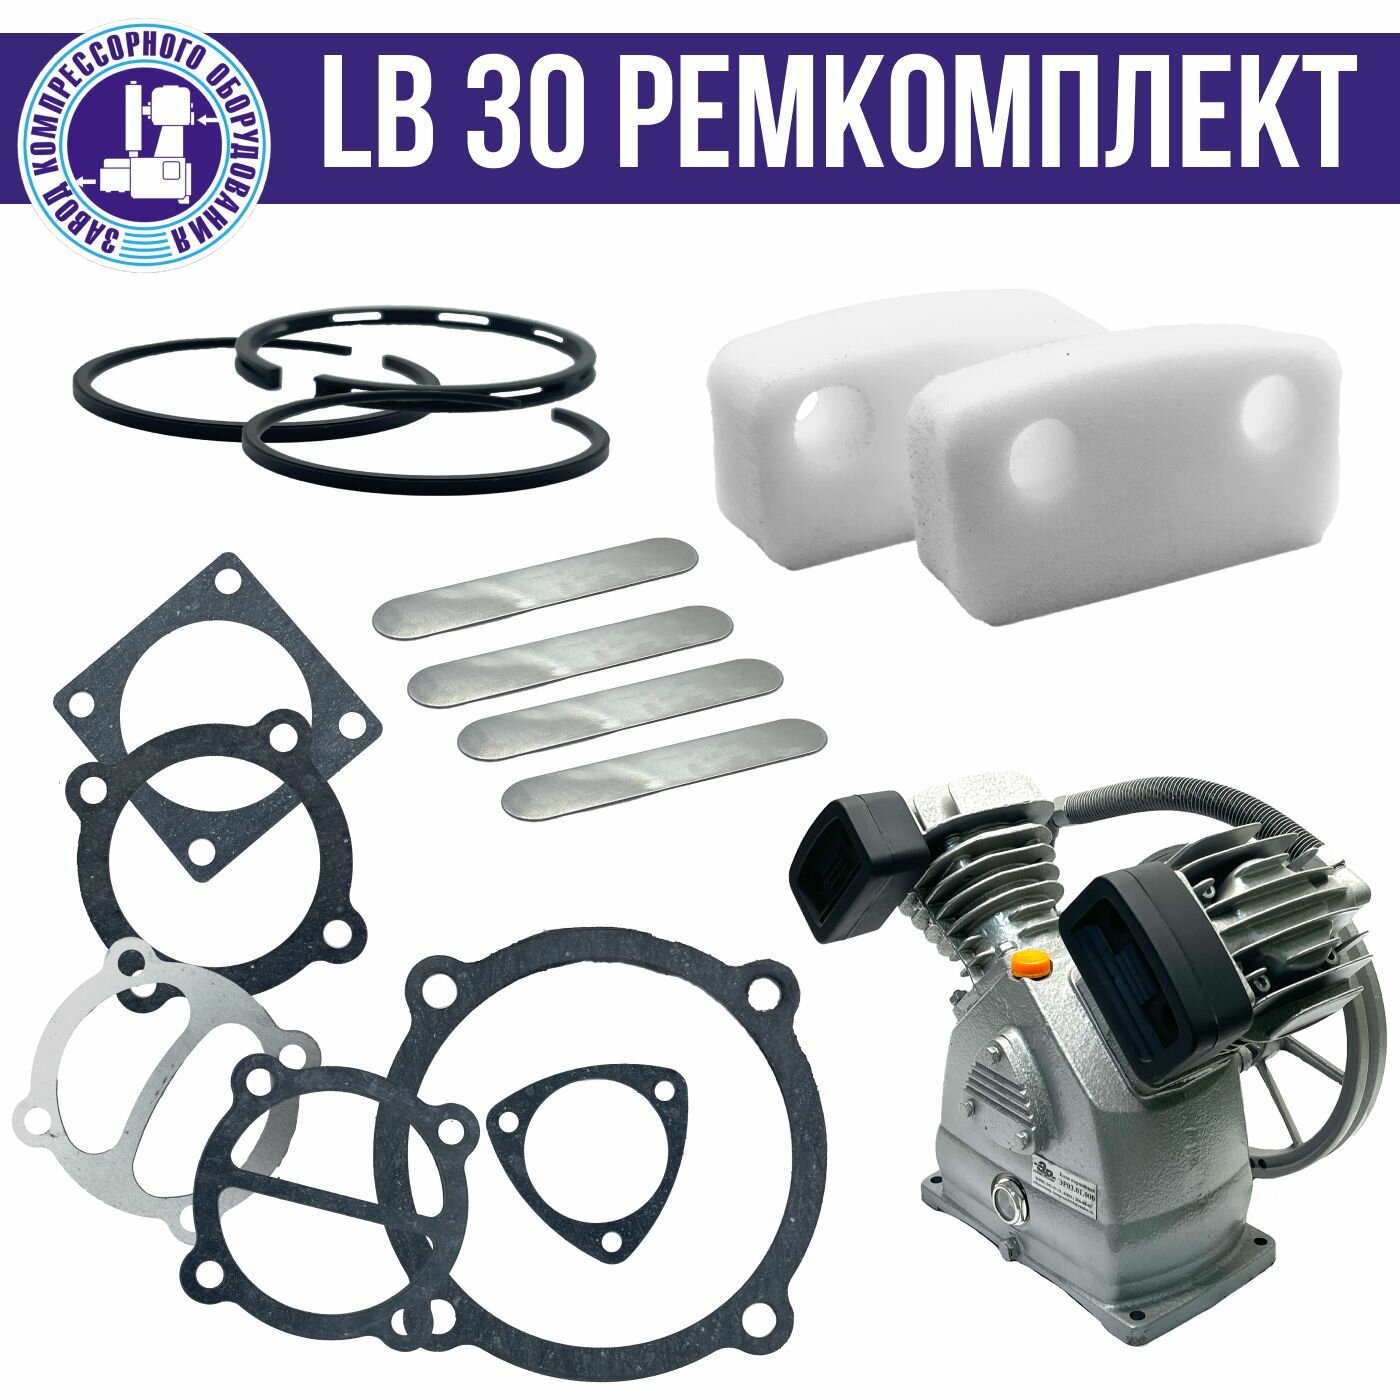 Ремкомплект для компрессора LB30 ЭнергоРесурс